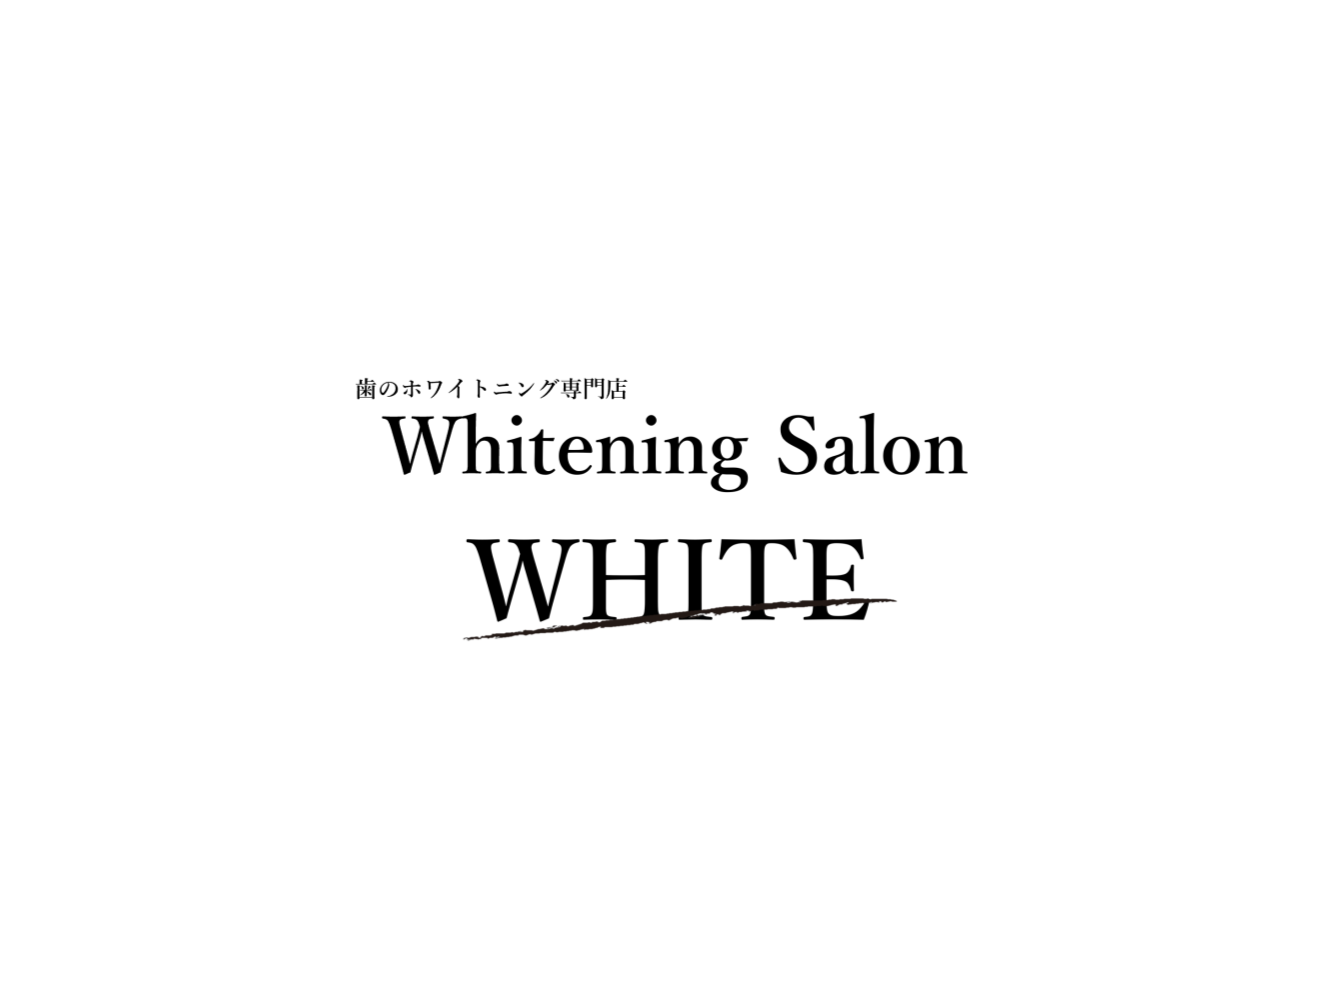 ホワイトニンクサロンWHITE専門店.pptx_e0XL19S